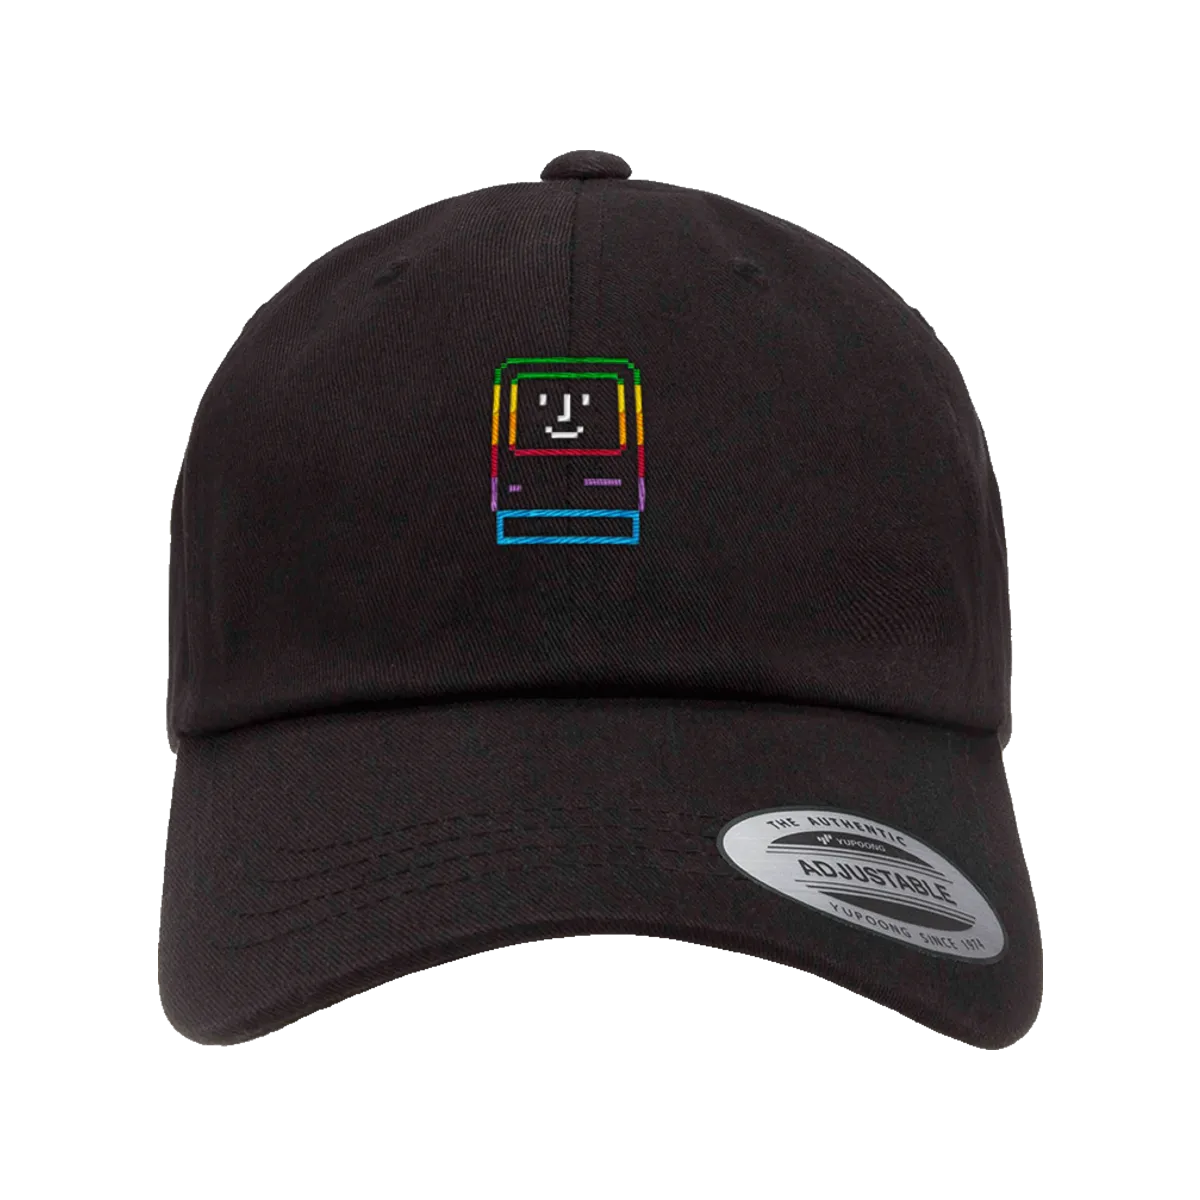 Picasso Macintosh - Apple Rainbow” graphic dad hat, trucker hat